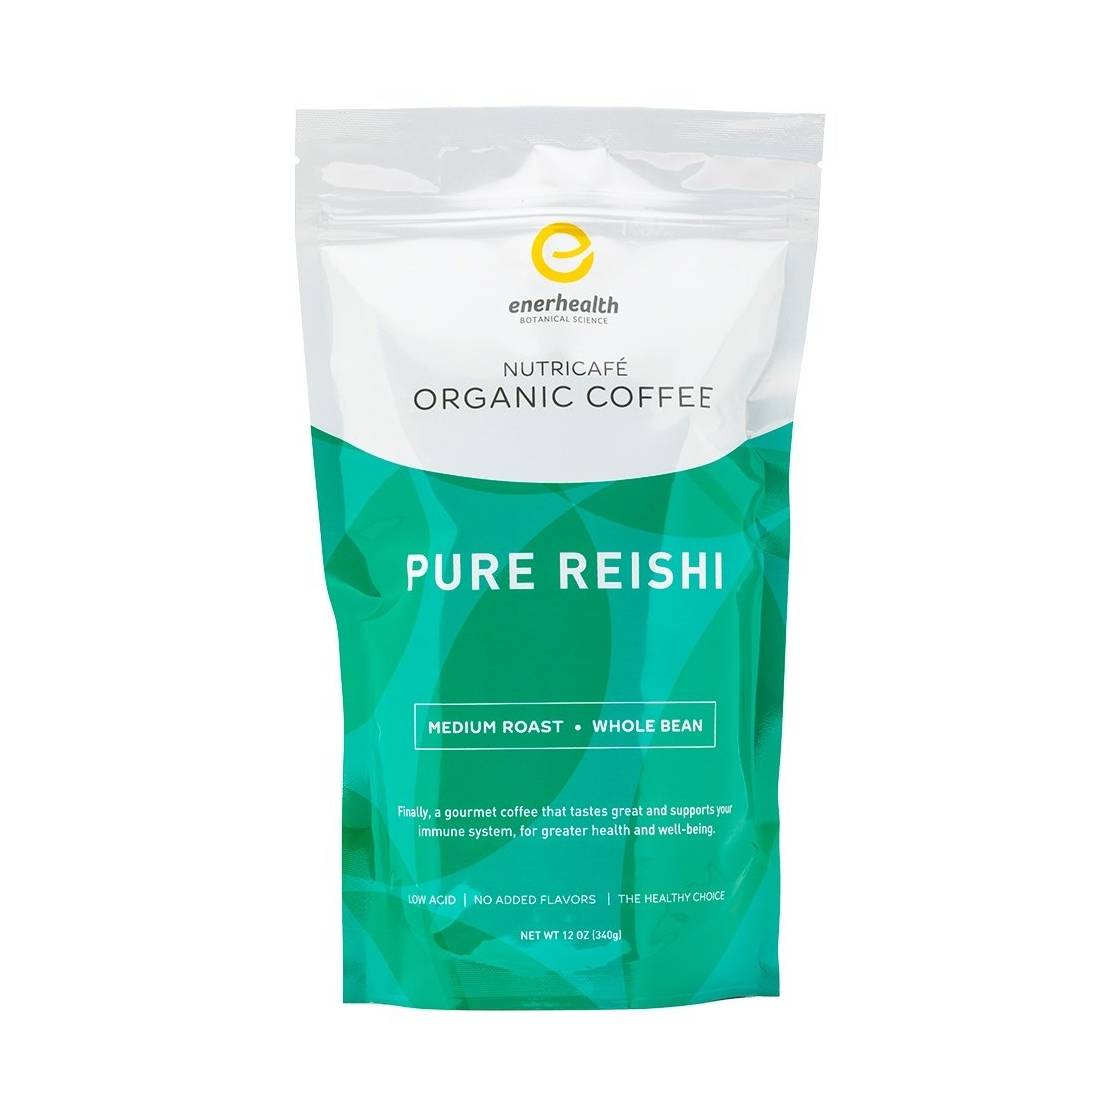 Pure reishi organic coffee.